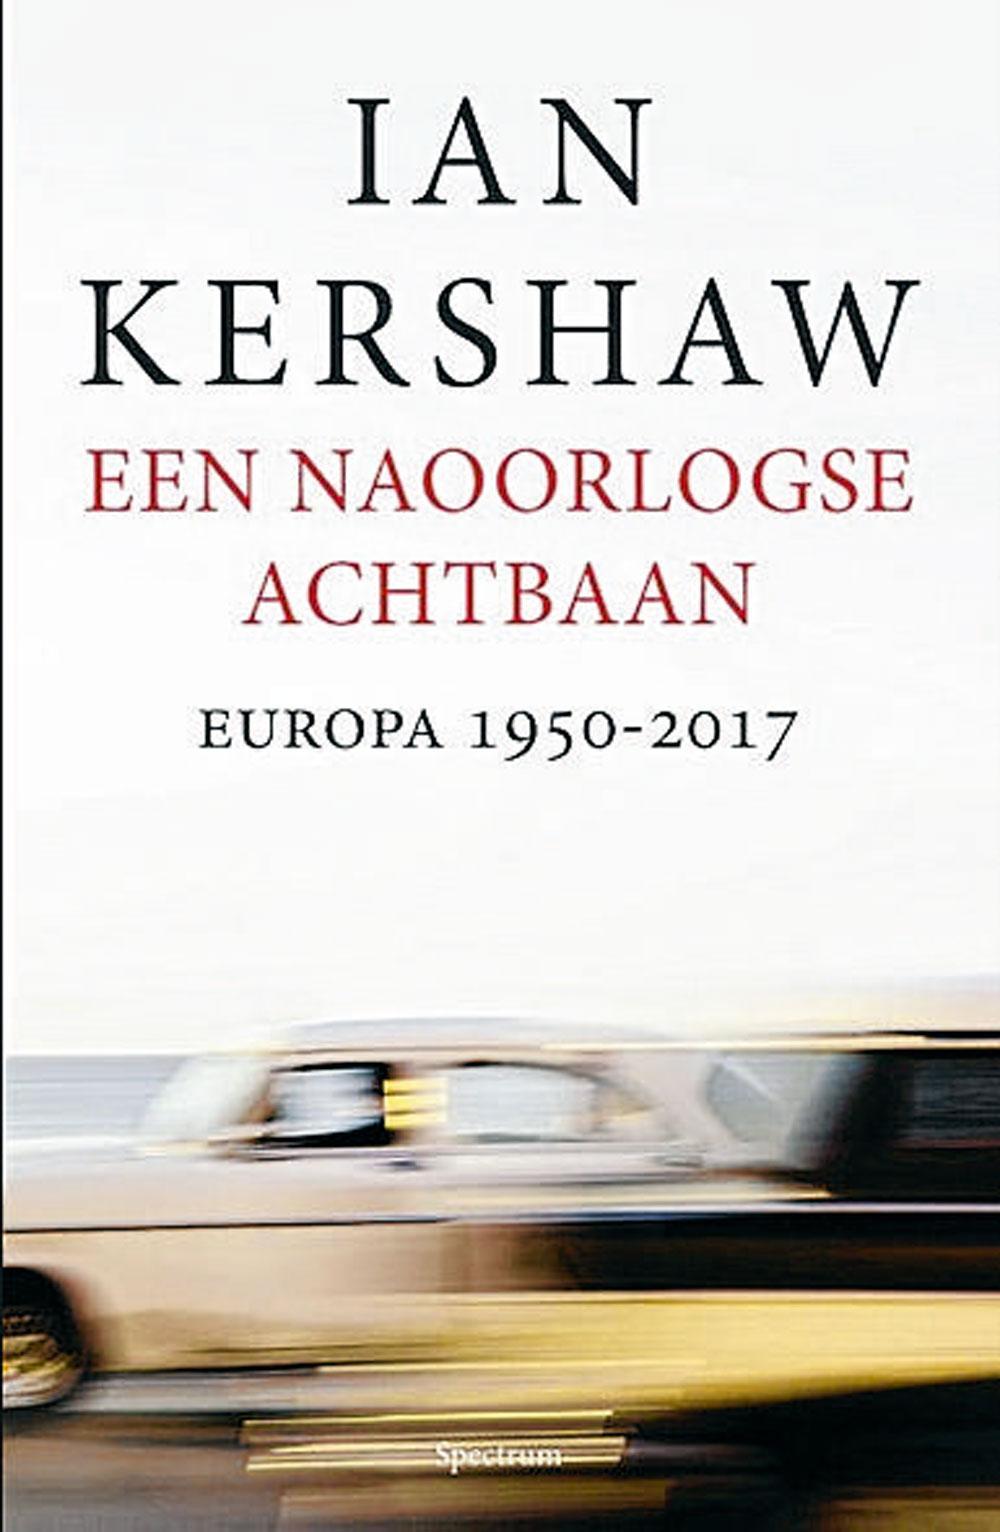 Ian Kershaw, Een naoorlogse achtbaan. Europa 1950 - 2017, Uitgeverij Spectrum, 704 blz., 29,99 euro